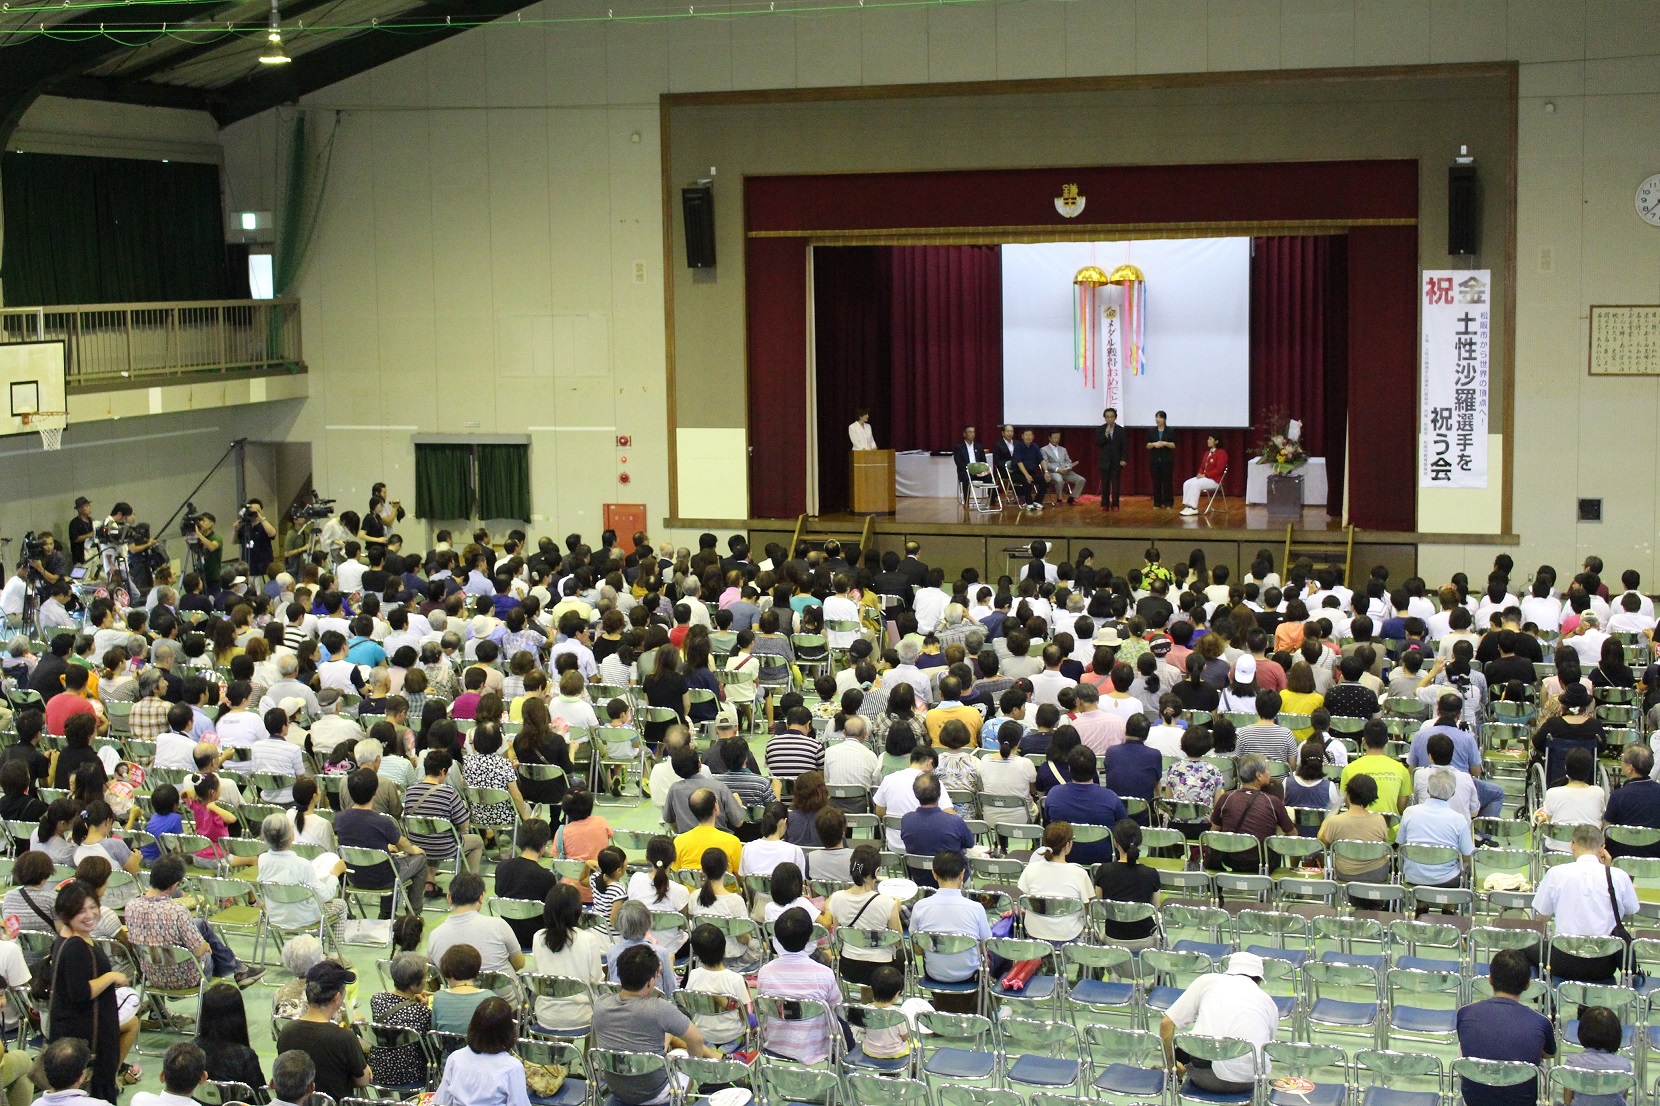 鎌田中学校の体育館で行われた祝う会の模様